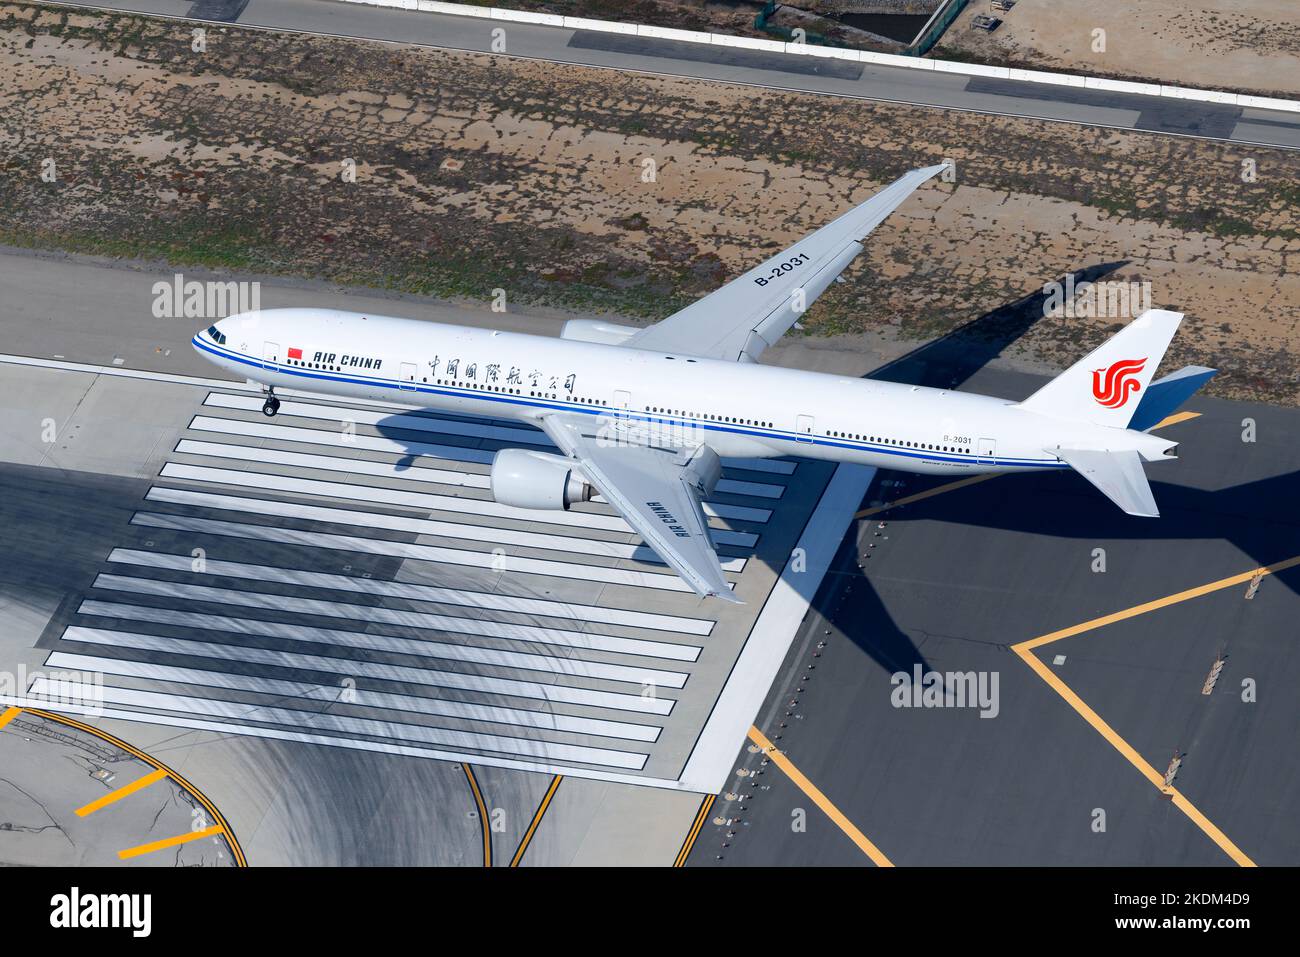 Landung von Flugzeugen der Boeing 777 von Air China. Das Flugzeugmodell 777-300ER von Air China wurde als B-2031 über der Landebahn-Schwelle registriert. Luftaufnahme von 777 Flugzeugen. Stockfoto